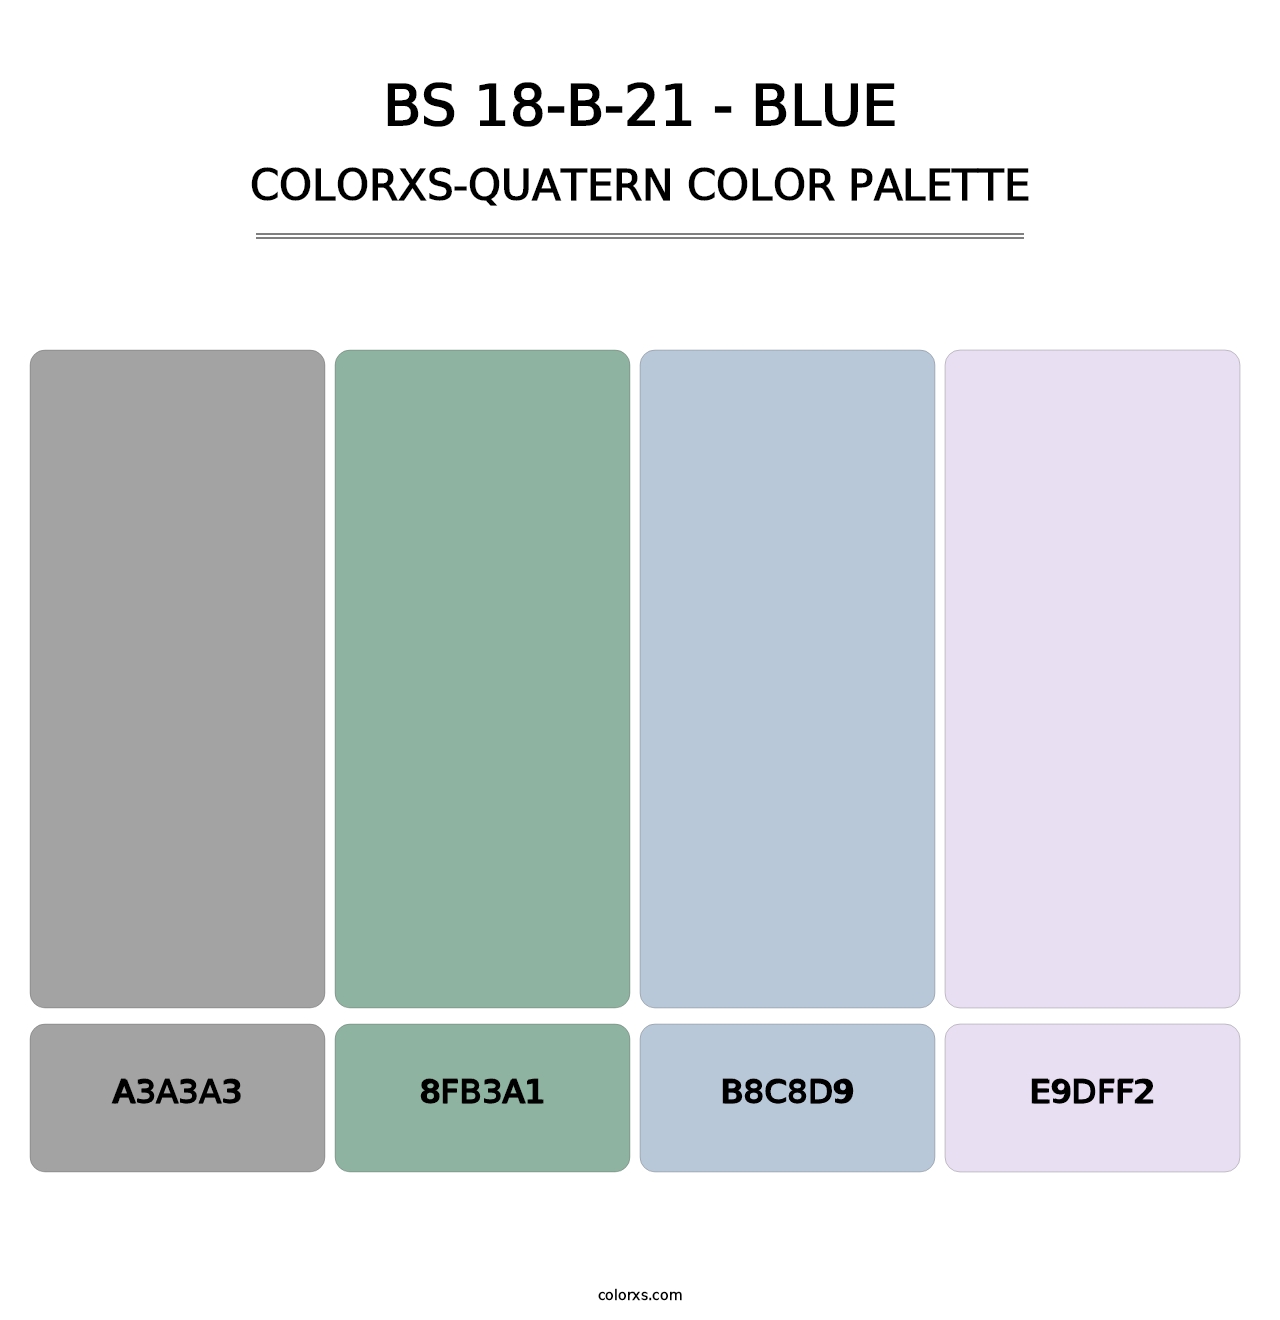 BS 18-B-21 - Blue - Colorxs Quatern Palette